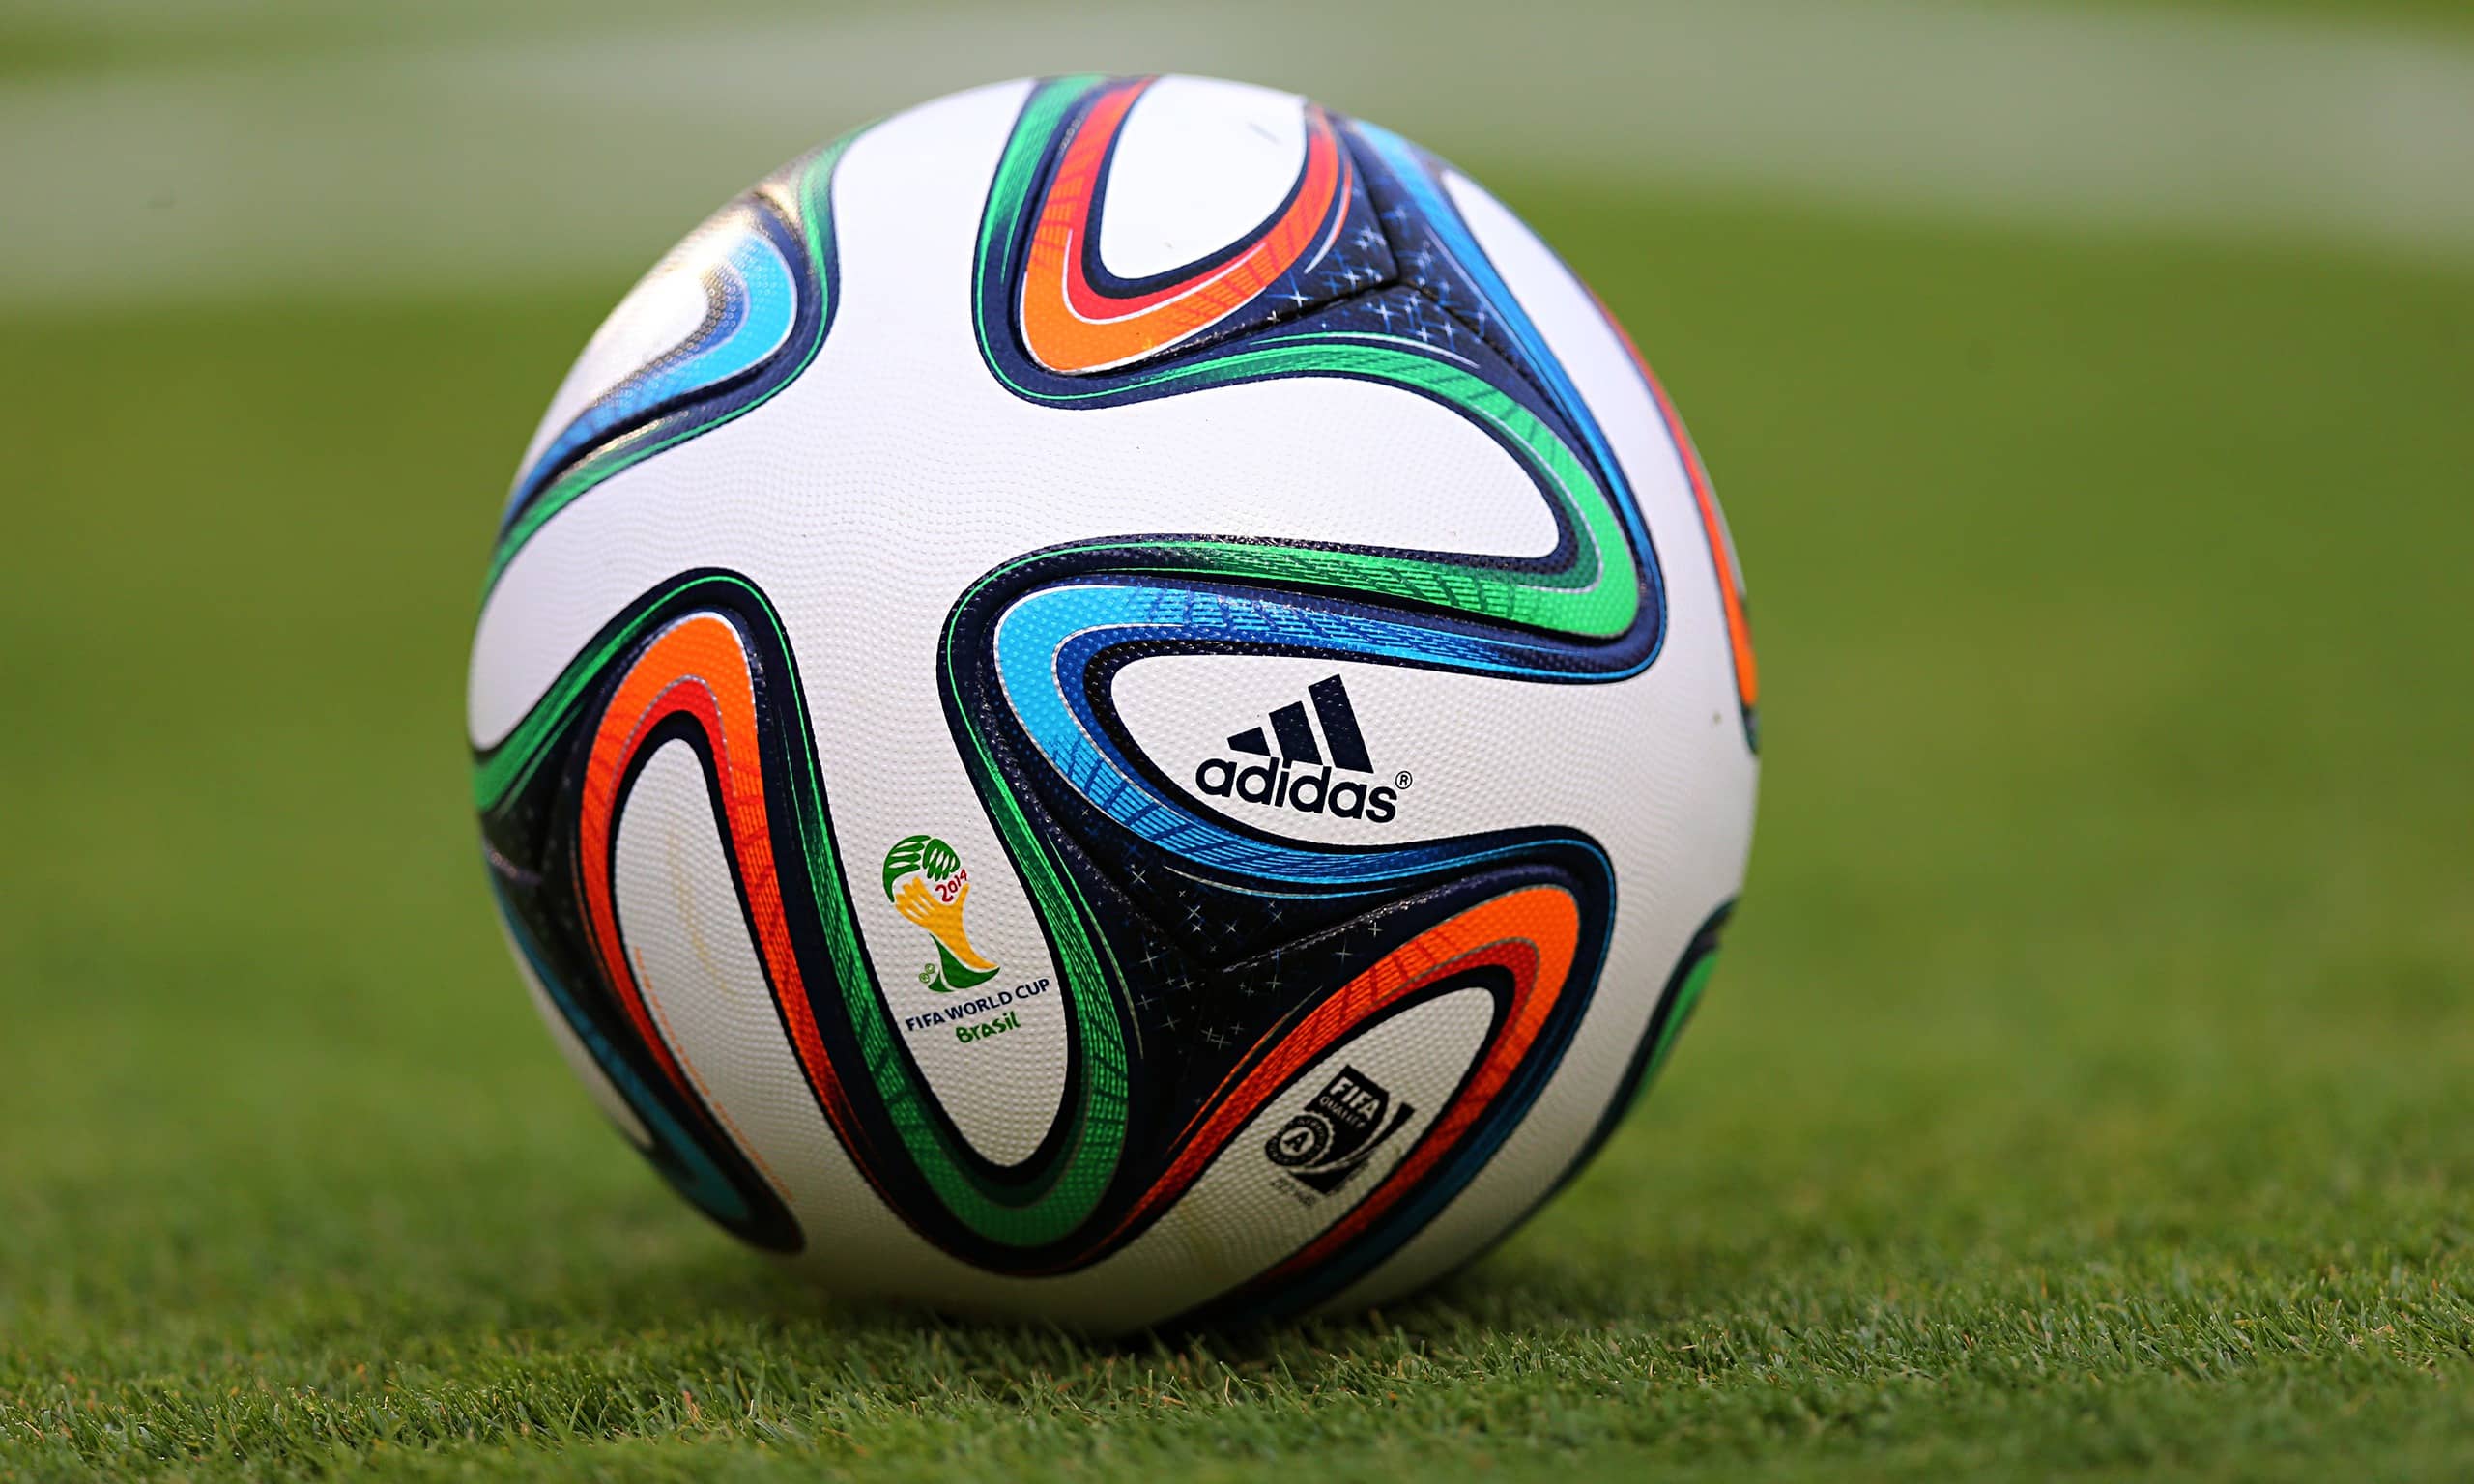 Ránking FIFA mantiene a 4 equipos latinoamericanos entre los primeros 10